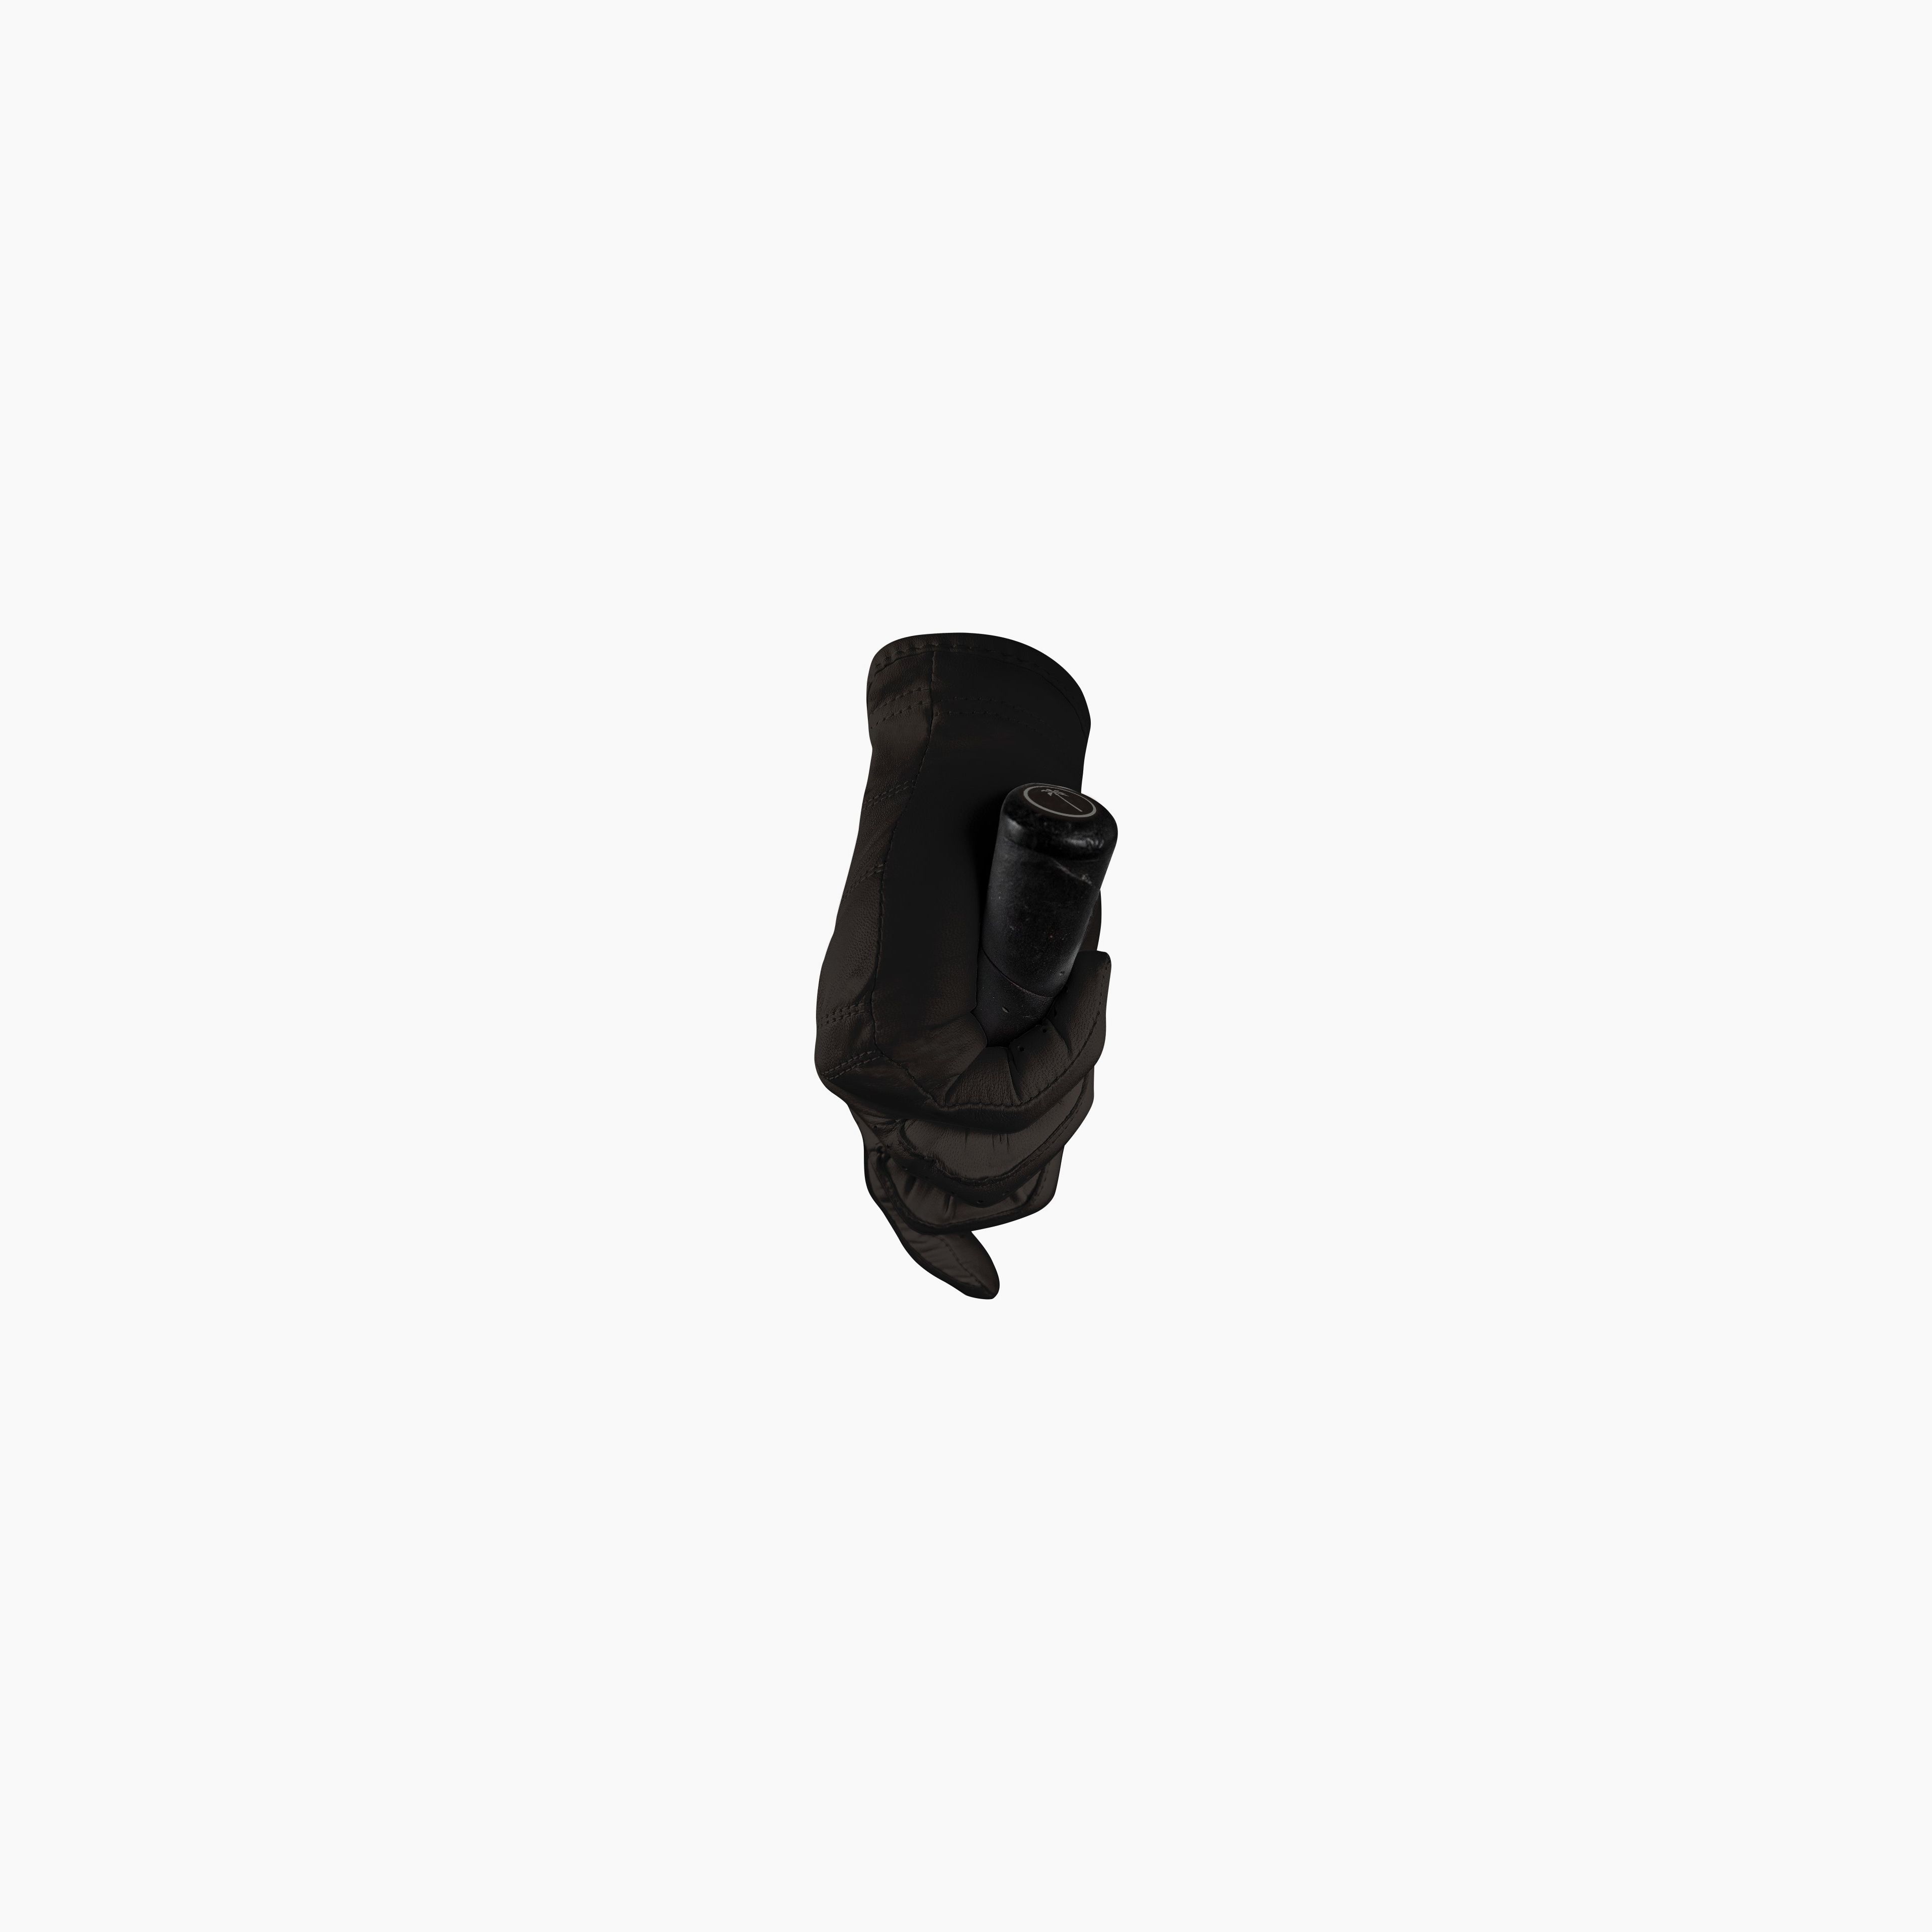 Women's Canvas Glove (Black)